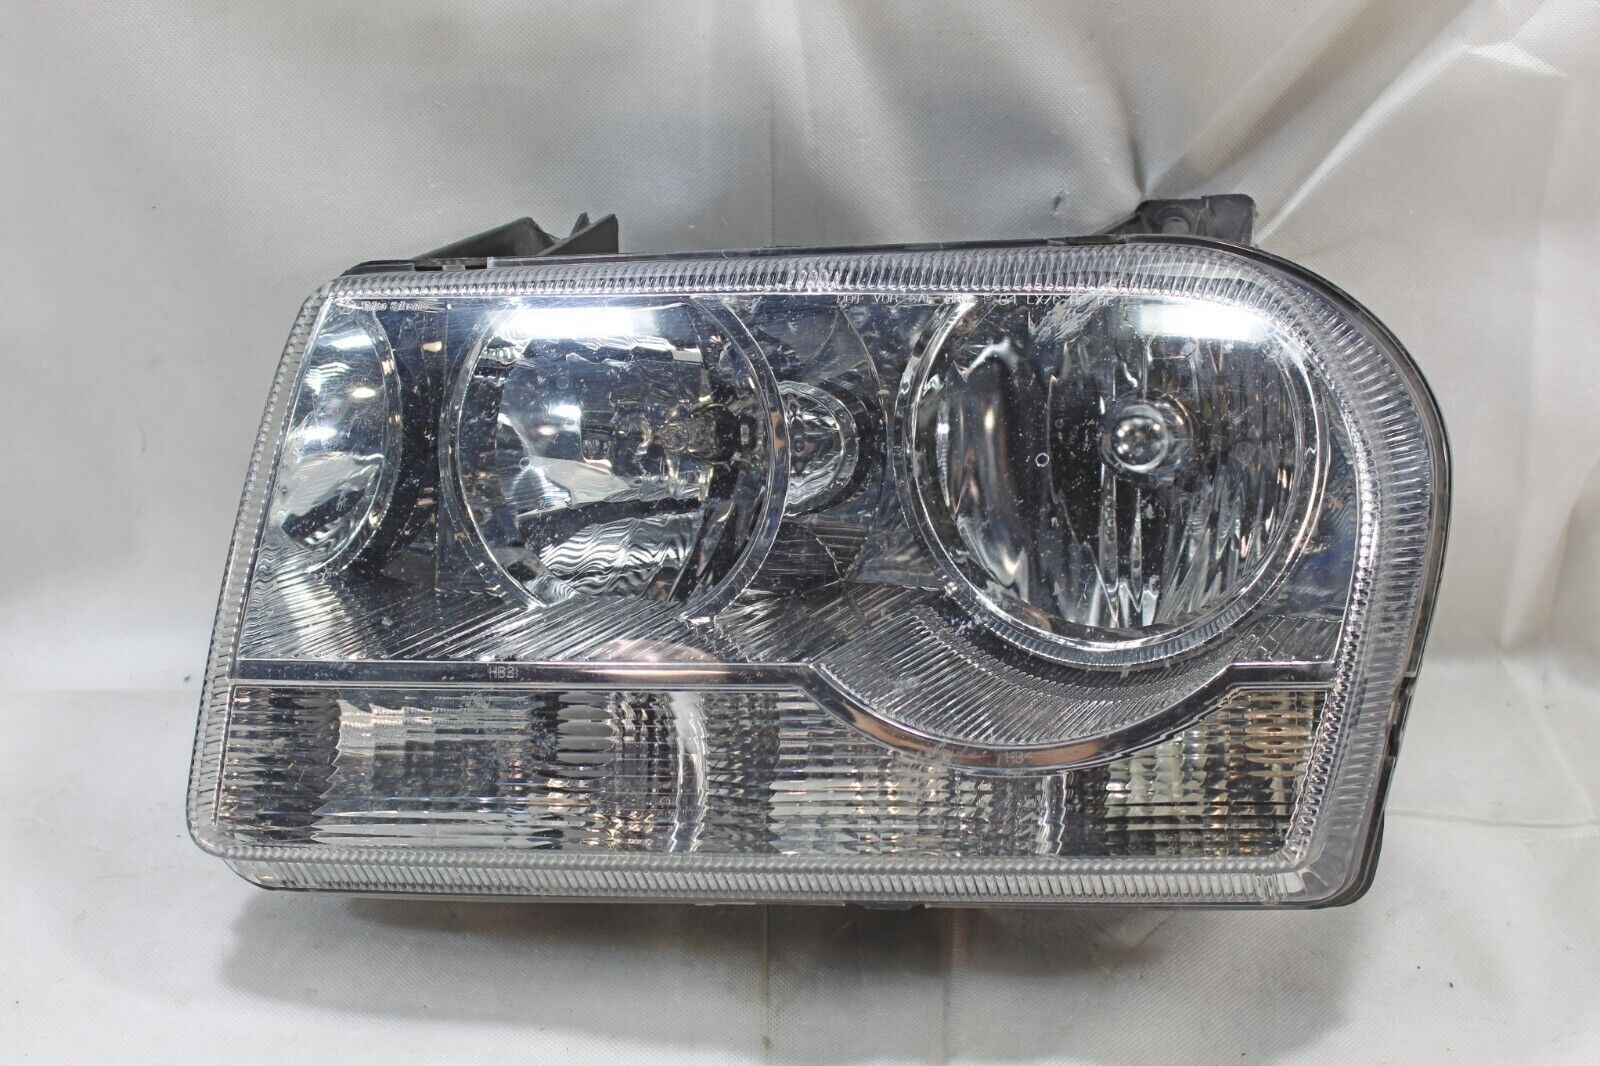 OEM 09 10 Dodge Charger - Chrysler 300 Left Driver Headlight # 2 tabs damaged